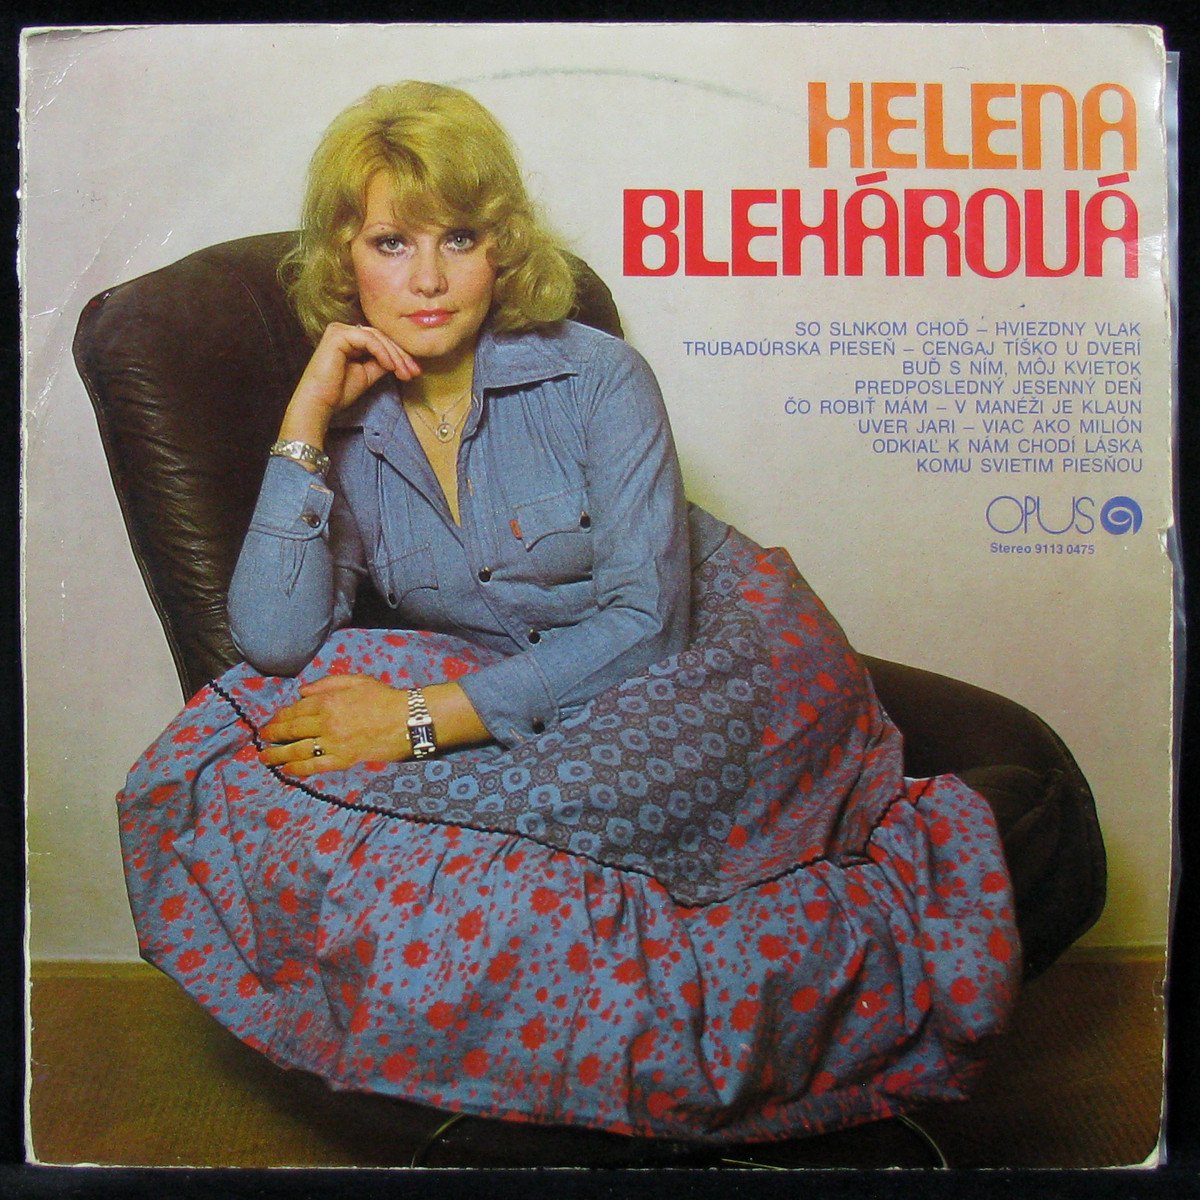 Helena Bleharova